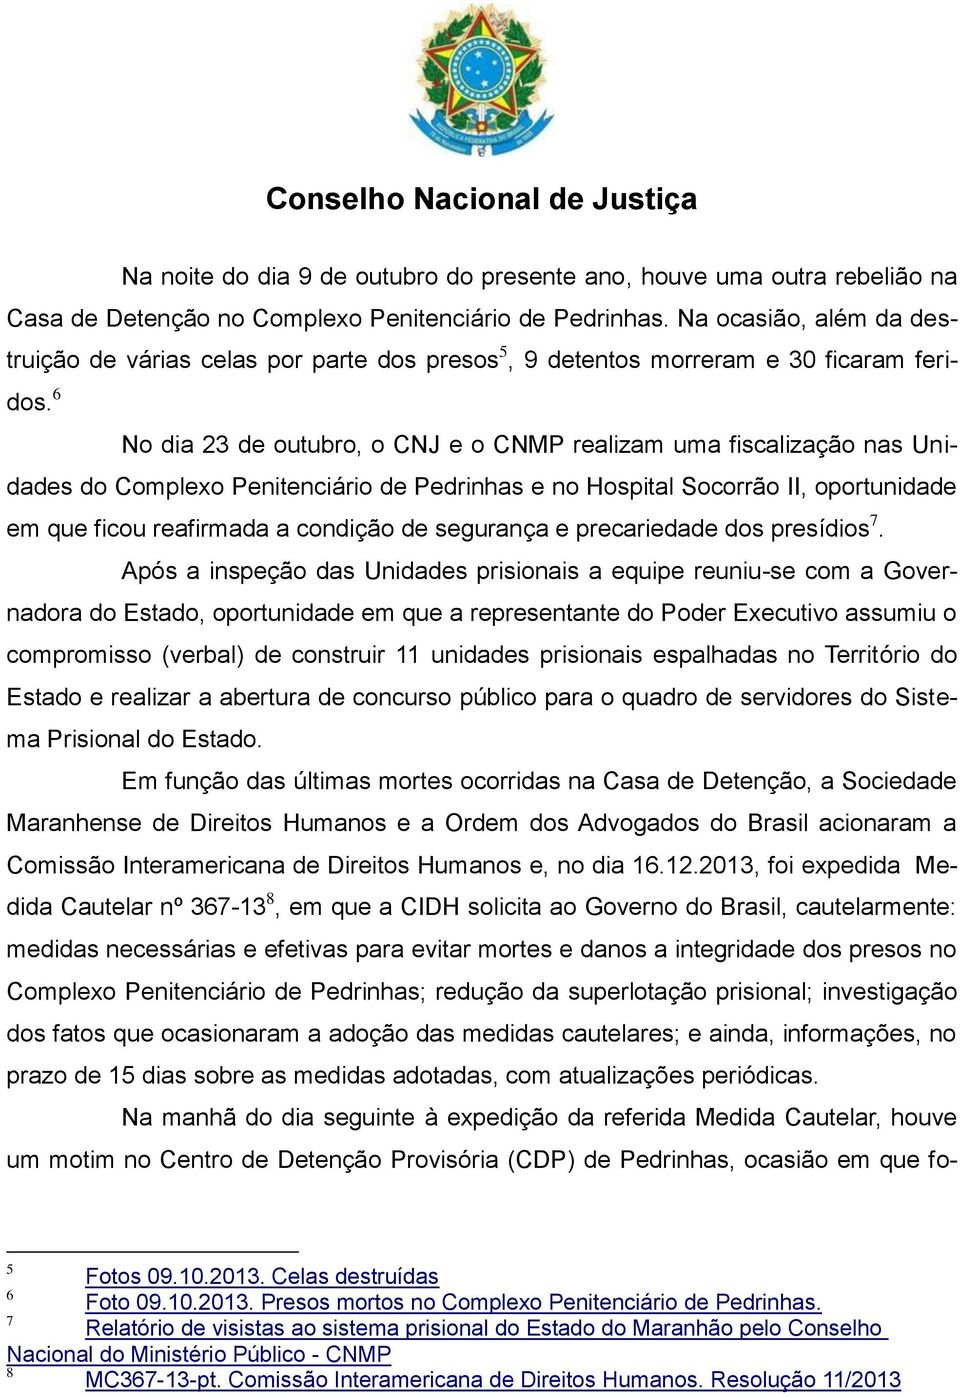 6 No dia 23 de outubro, o CNJ e o CNMP realizam uma fiscalização nas Unidades do Complexo Penitenciário de Pedrinhas e no Hospital Socorrão II, oportunidade em que ficou reafirmada a condição de